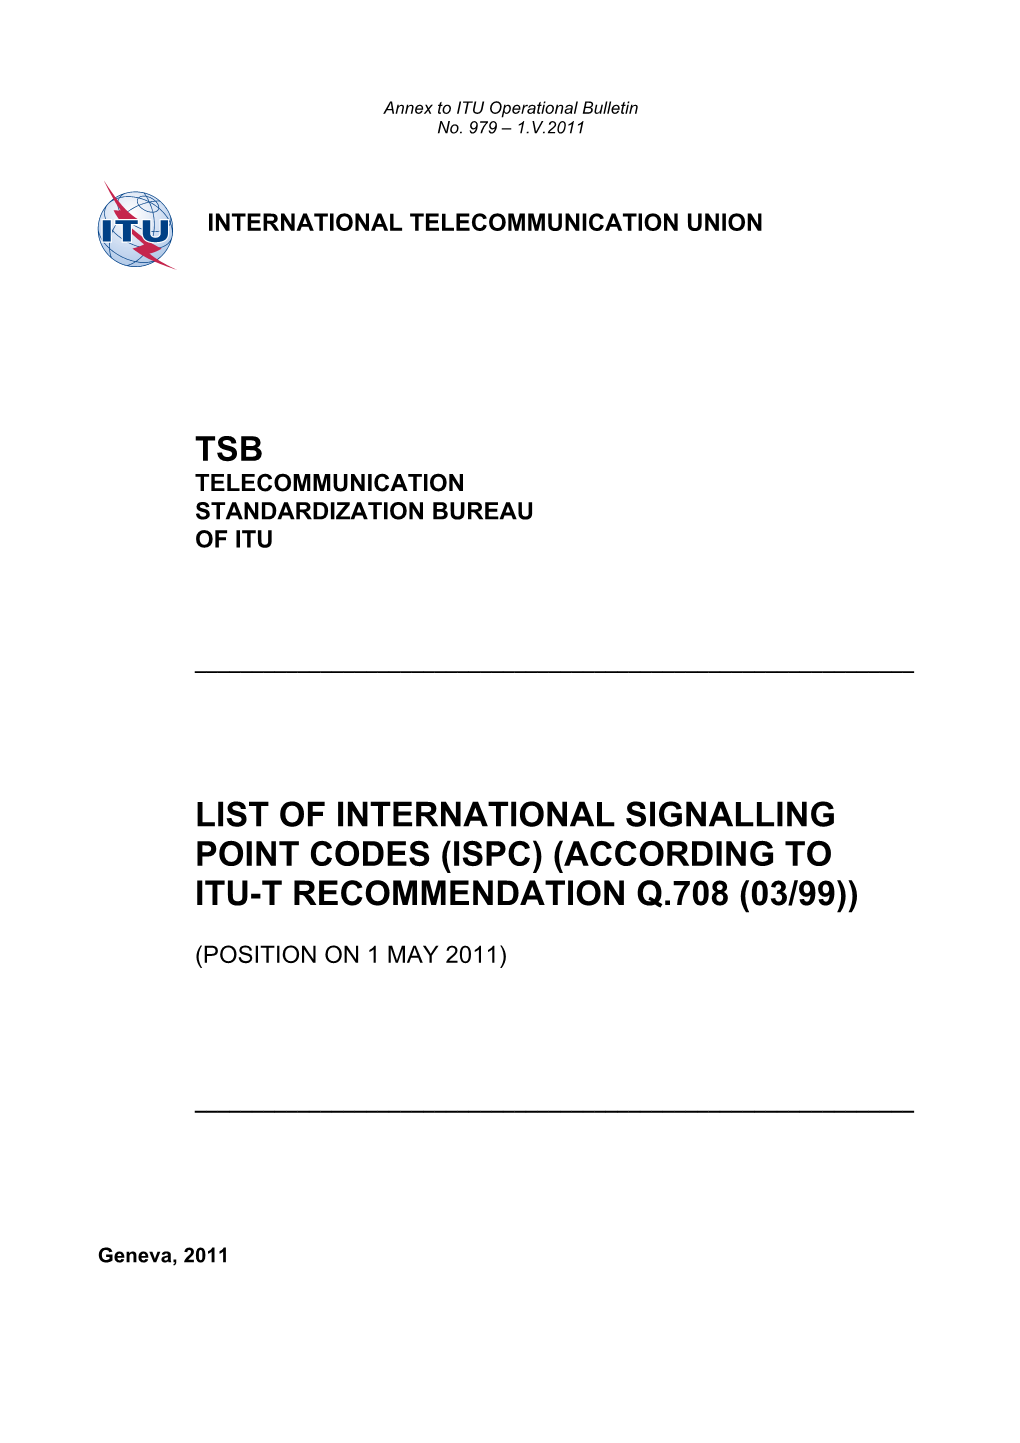 Annex to ITU Operational Bulletin No